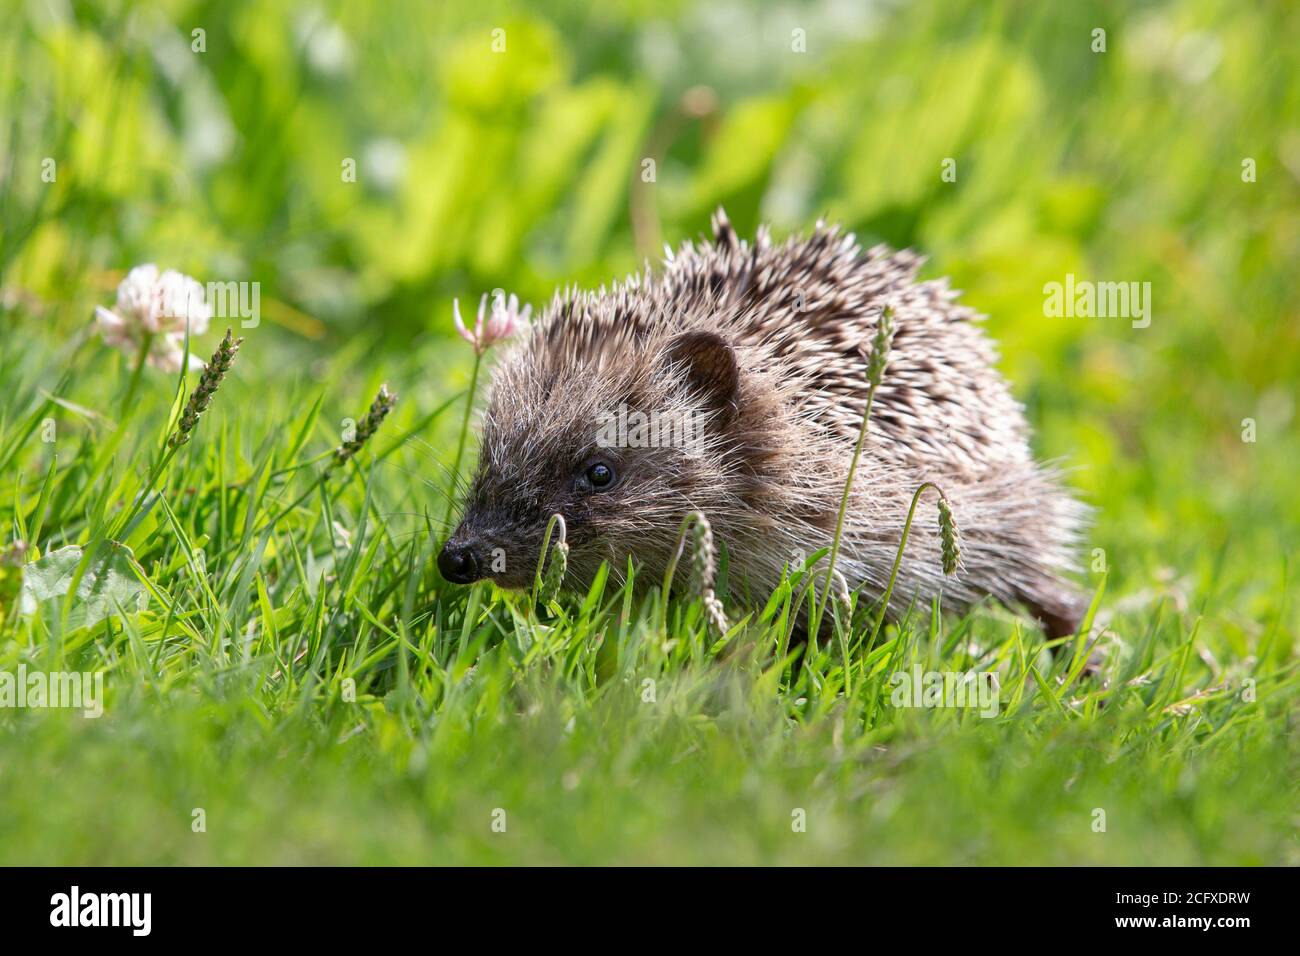 Lindo joven europeo Hedgehog (Erinaceus europaeus) caminando en la hierba. Foto de stock